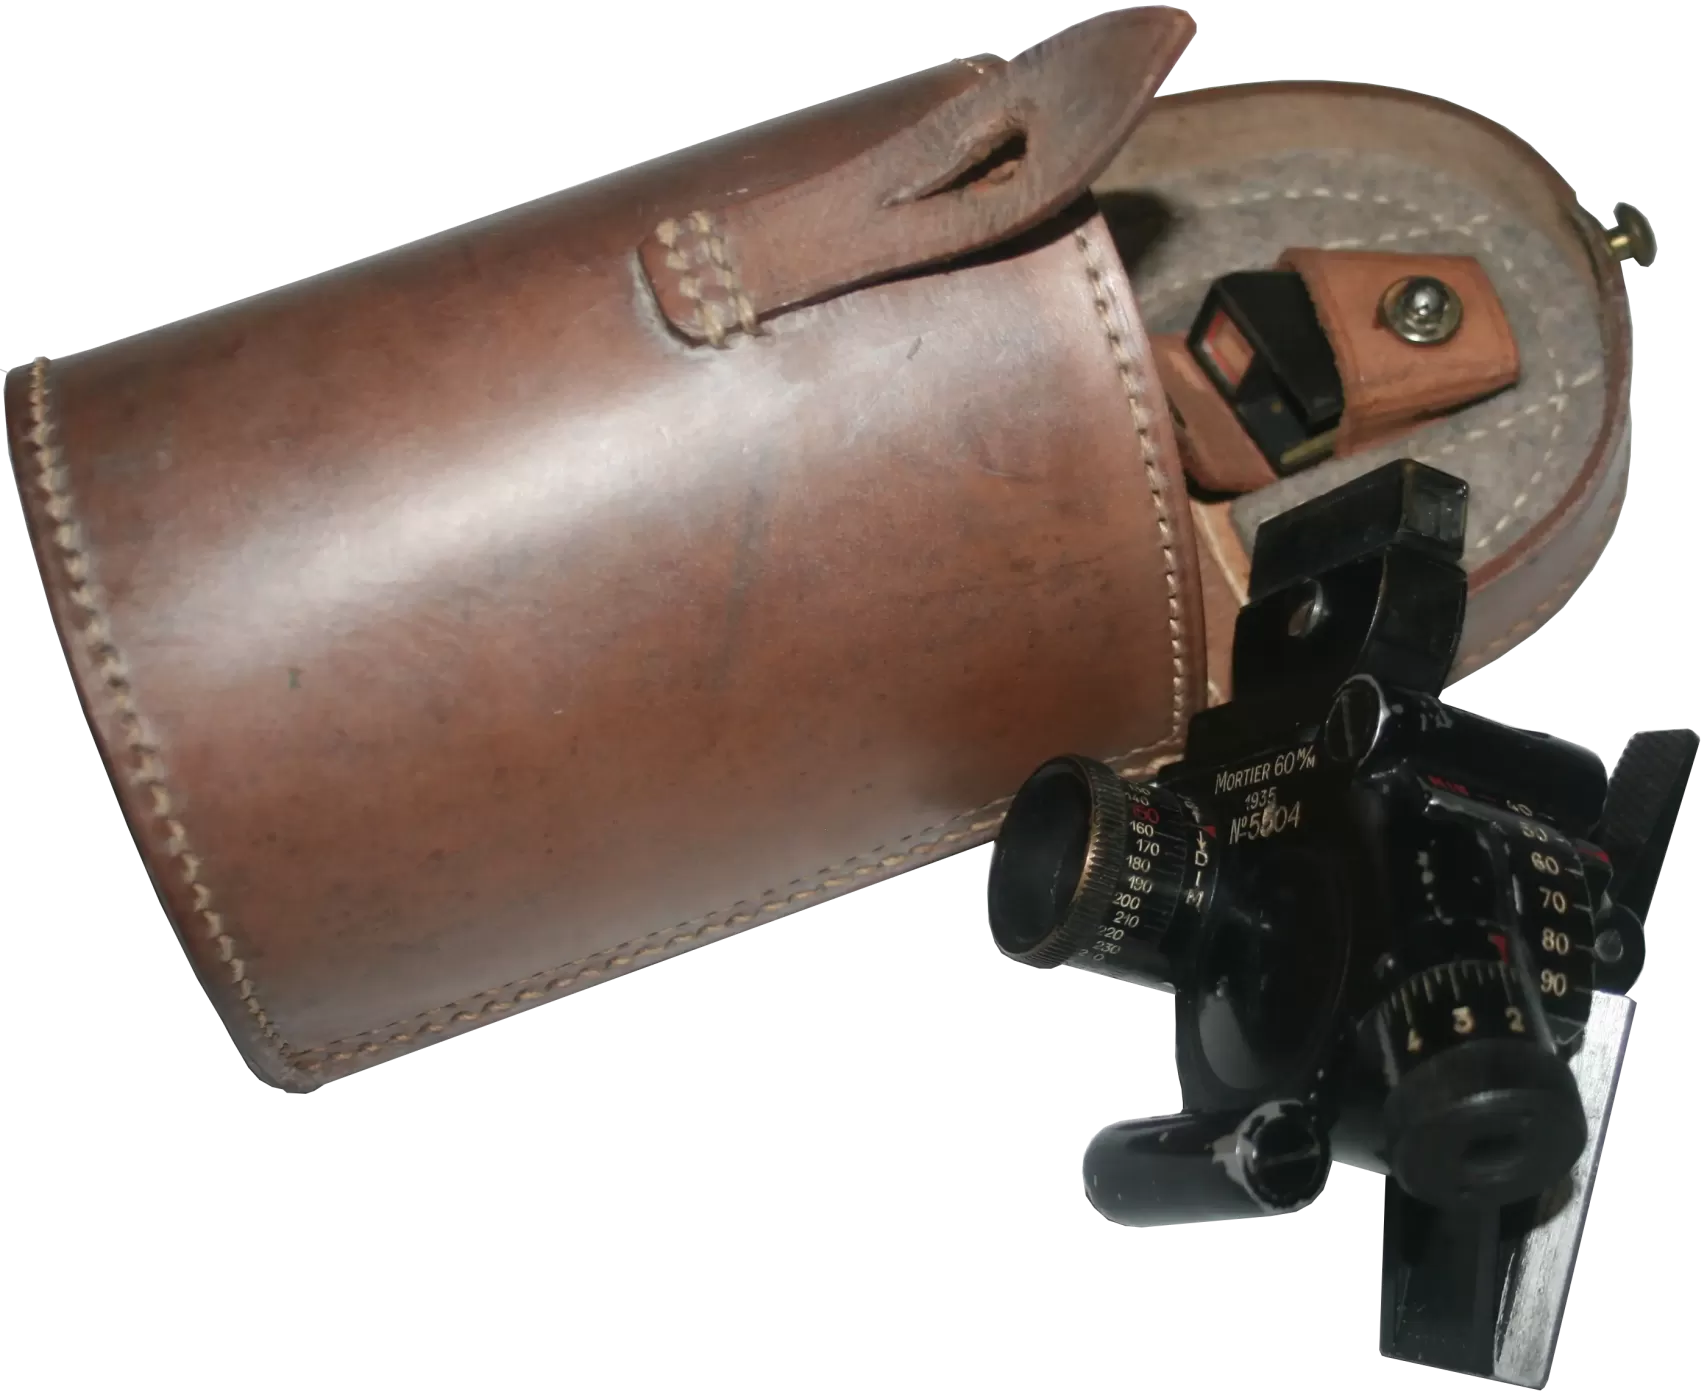 Mortier de 60 mm Brandt modèle 1935 (60 mle 1935) 